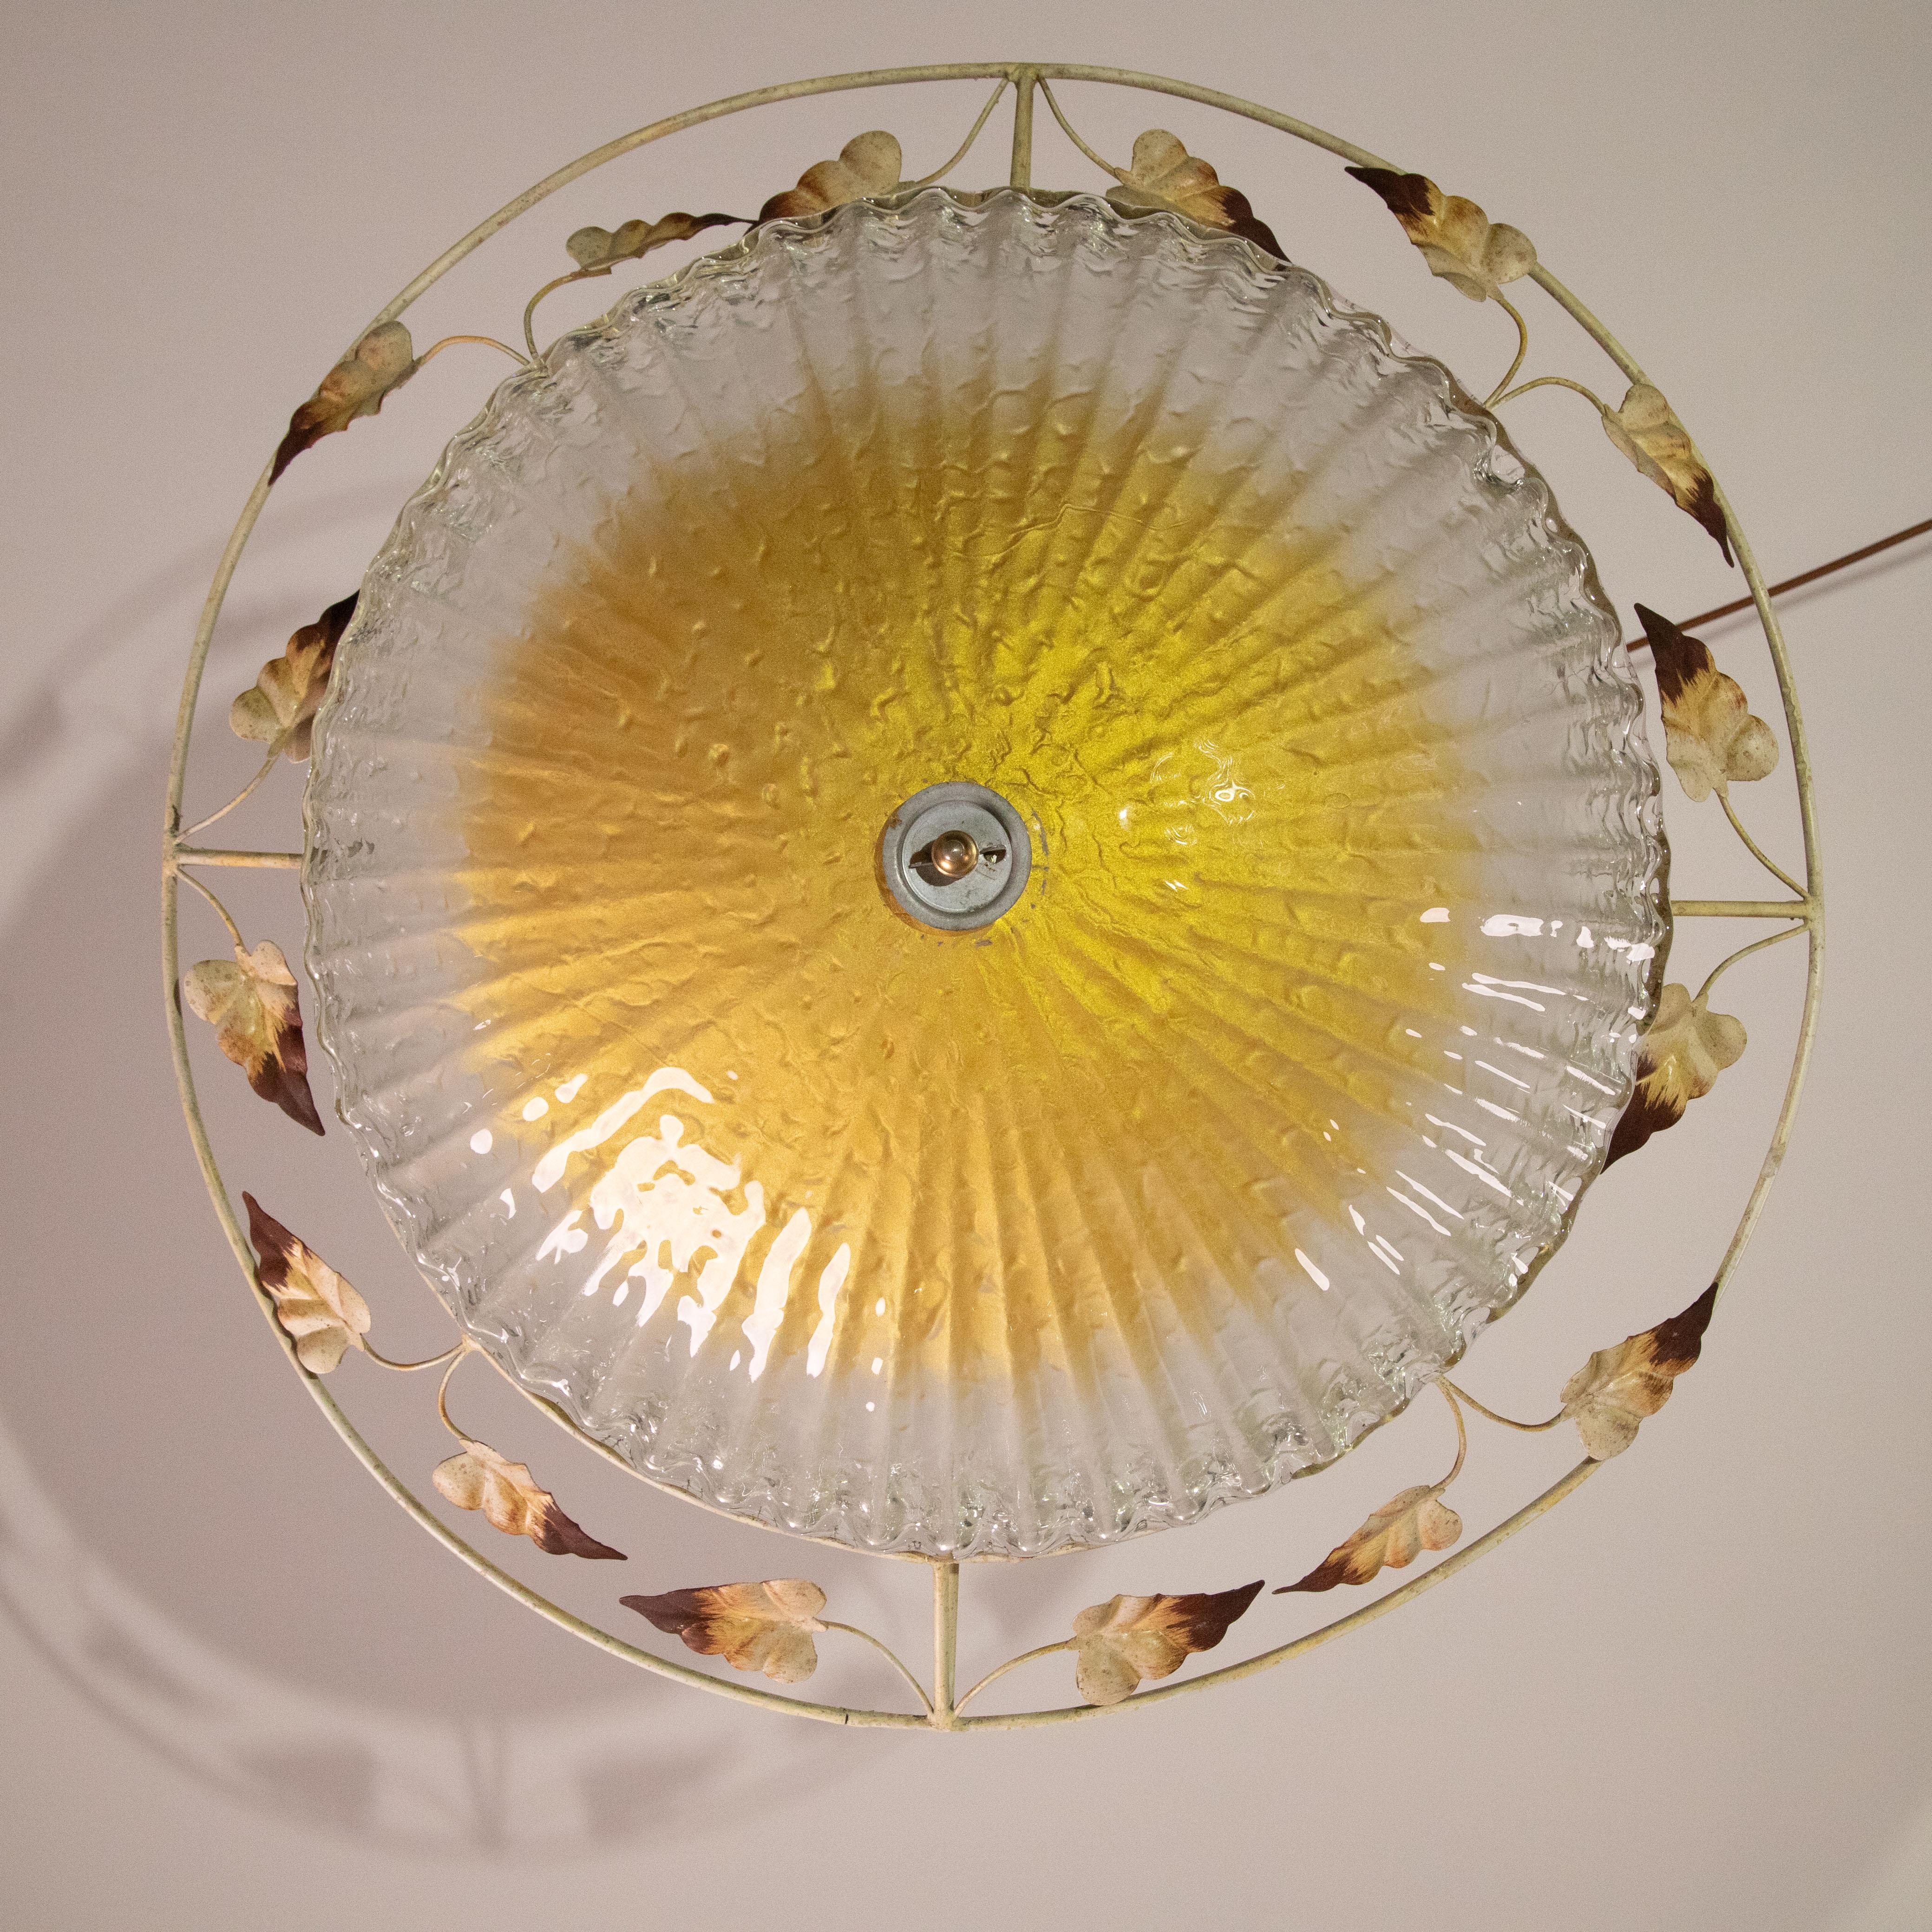 Elegant plafonnier avec structure décorée de Murano et de fer.
Accepte trois ampoules à vis E27, normes européennes.
Mesures :
Diamètre de 67 cm
Hauteur 20 cm.